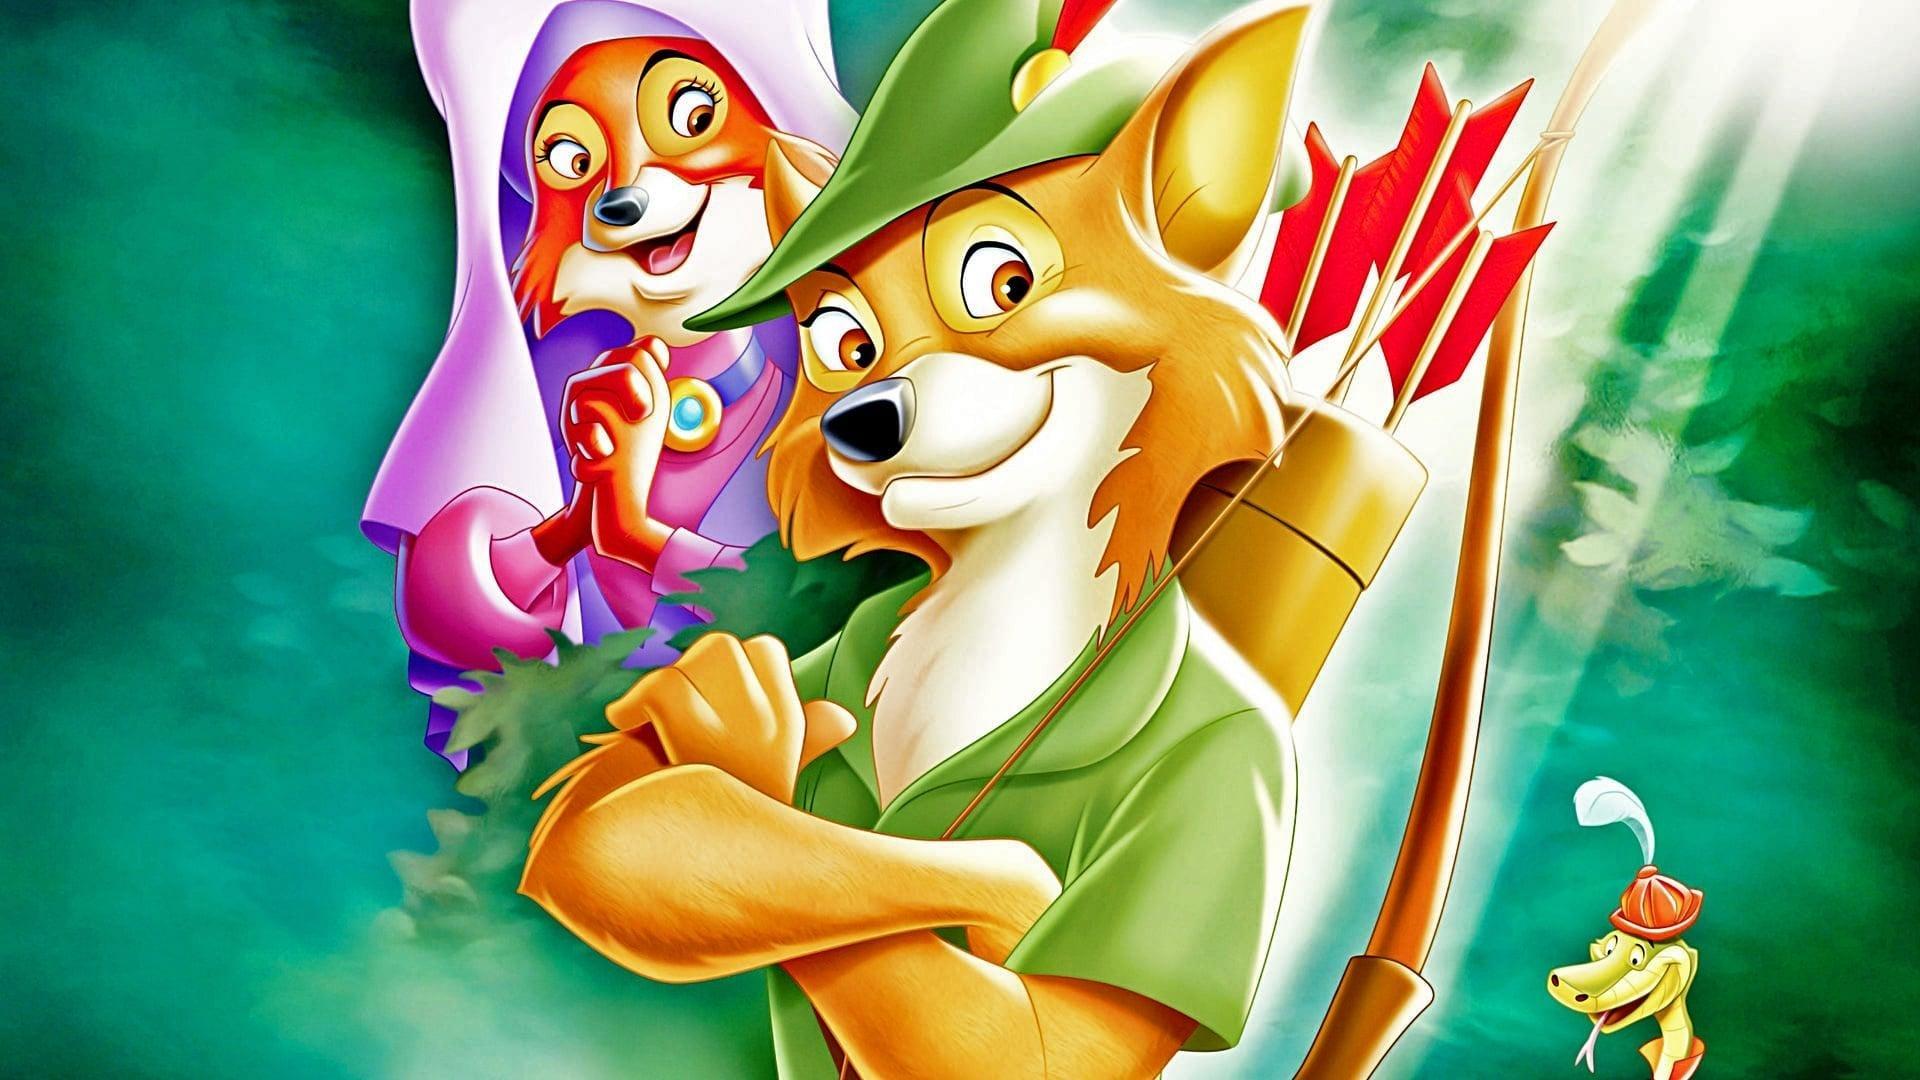 دانلود انیمیشن Robin Hood 1973